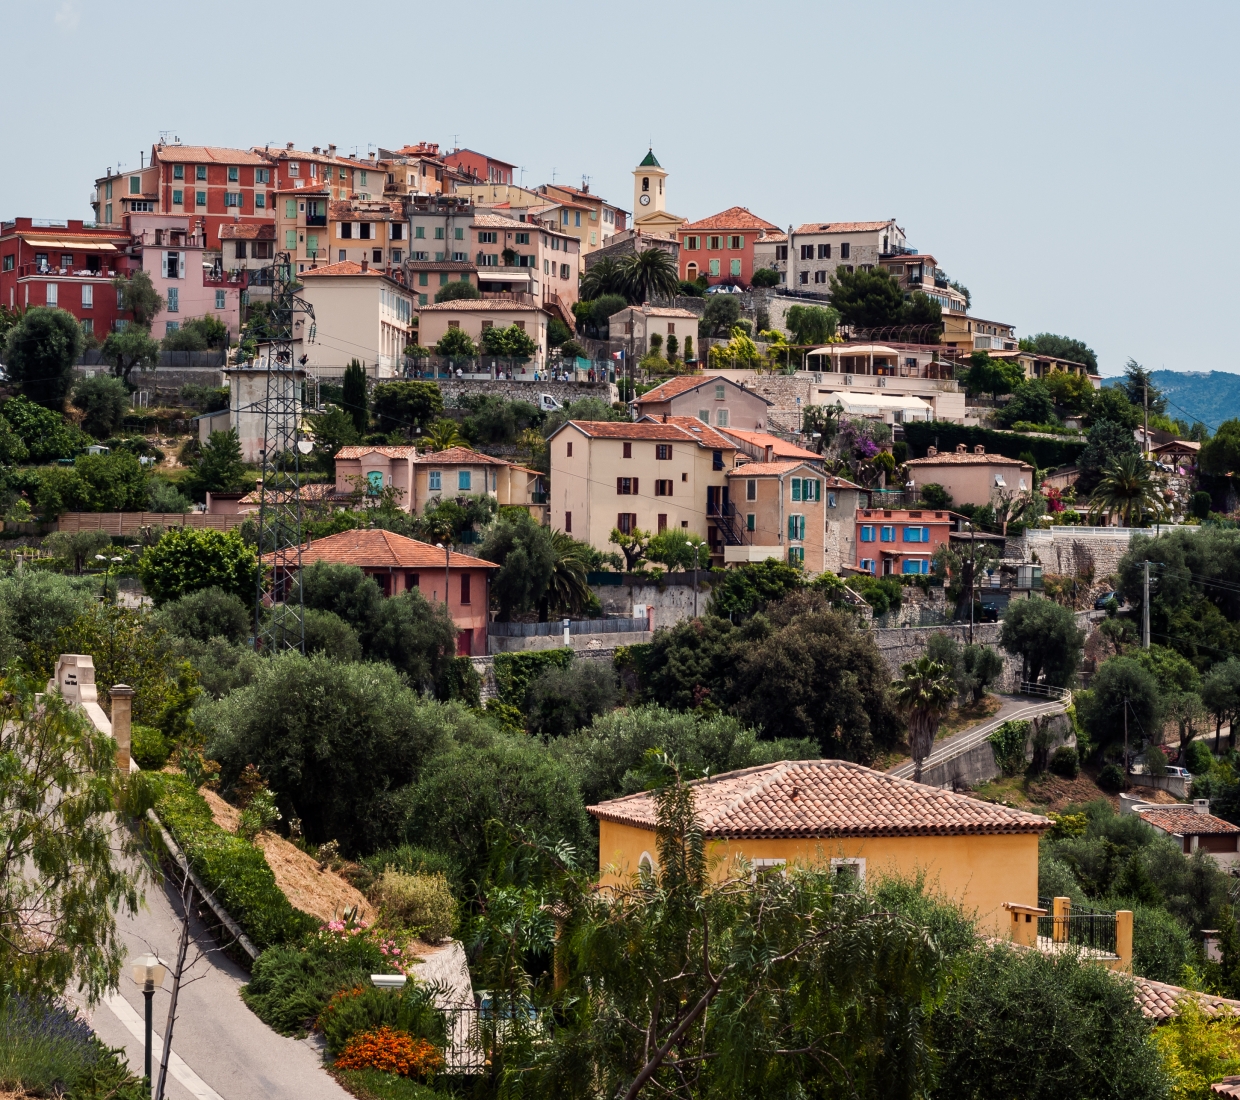 Hotéis de charme em Alpes Maritimes Côte d’Azur, apartamentos e casas de férias